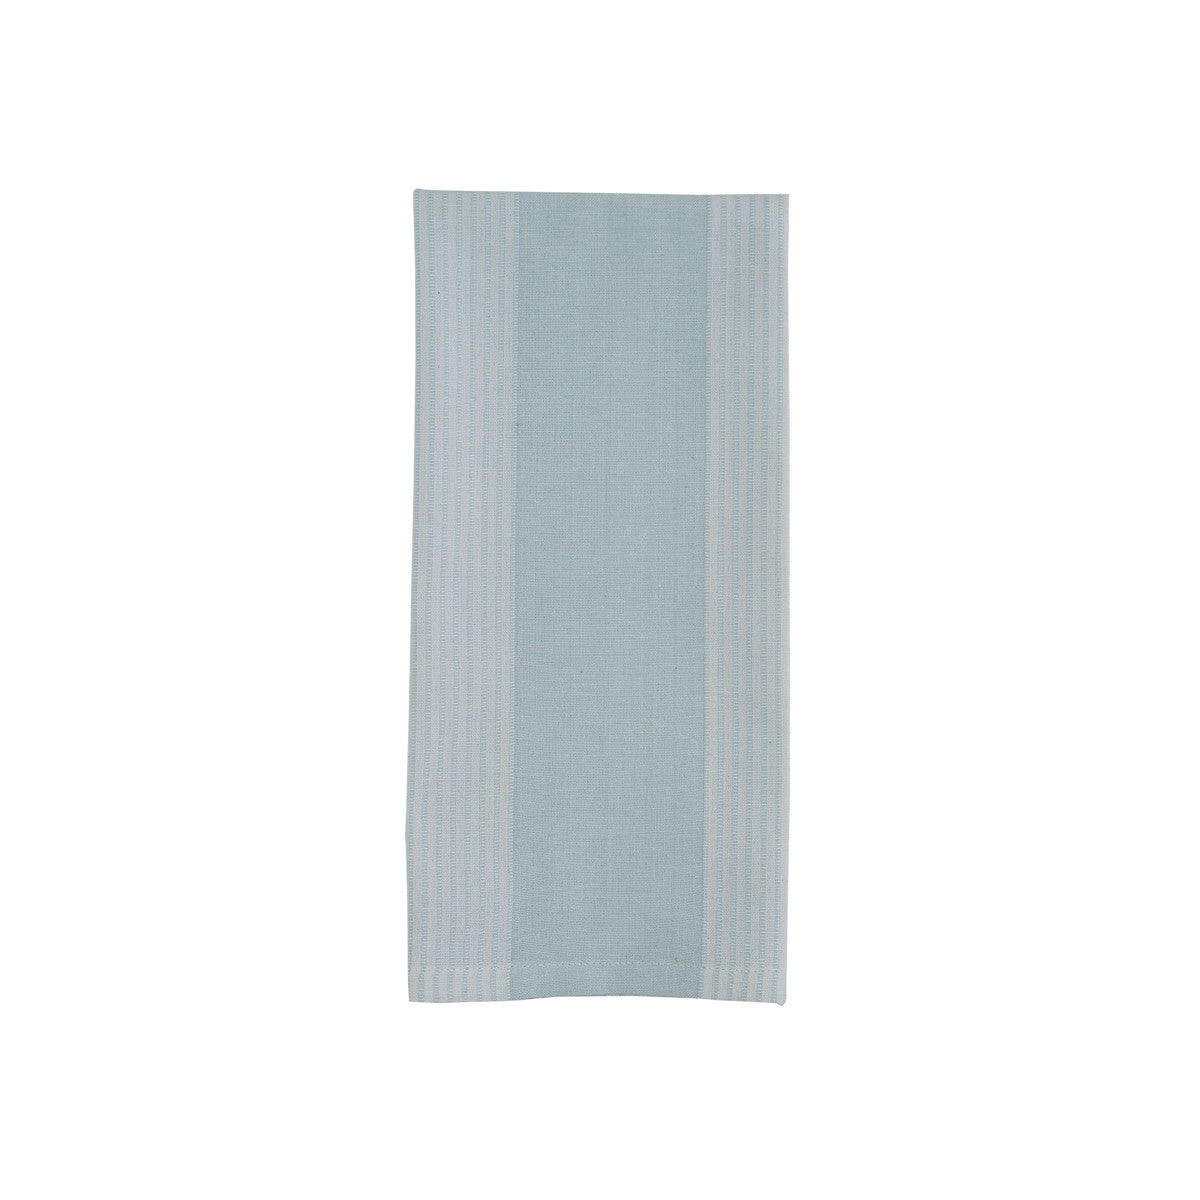 Blue Mist Stripe Woven Towel  Set of 2 Park Designs